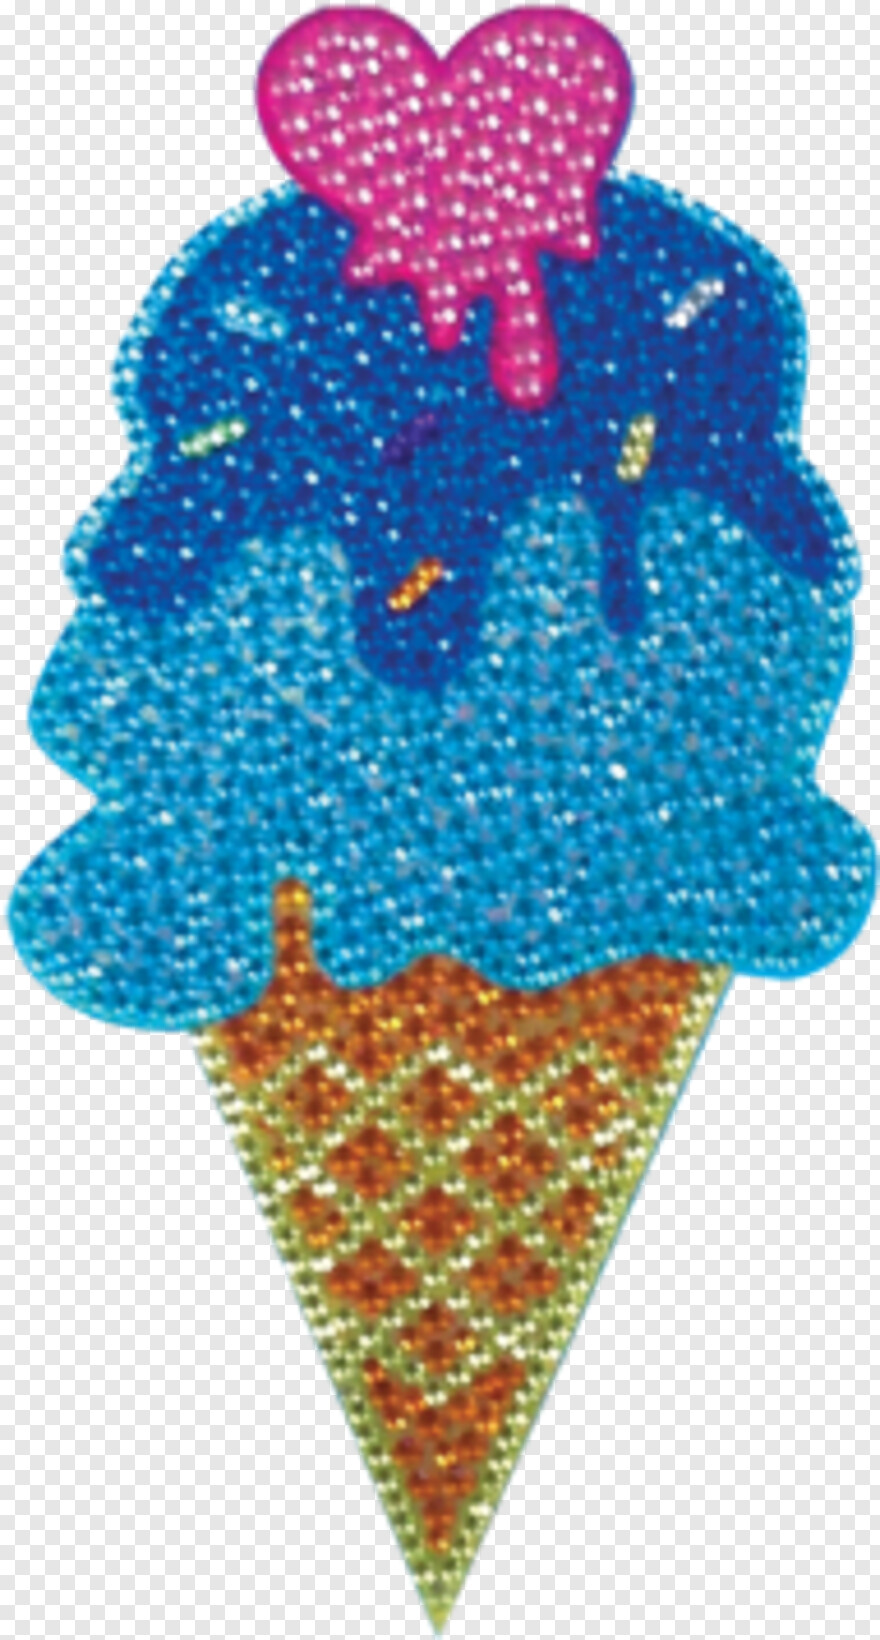 ice-cream-cone # 947243